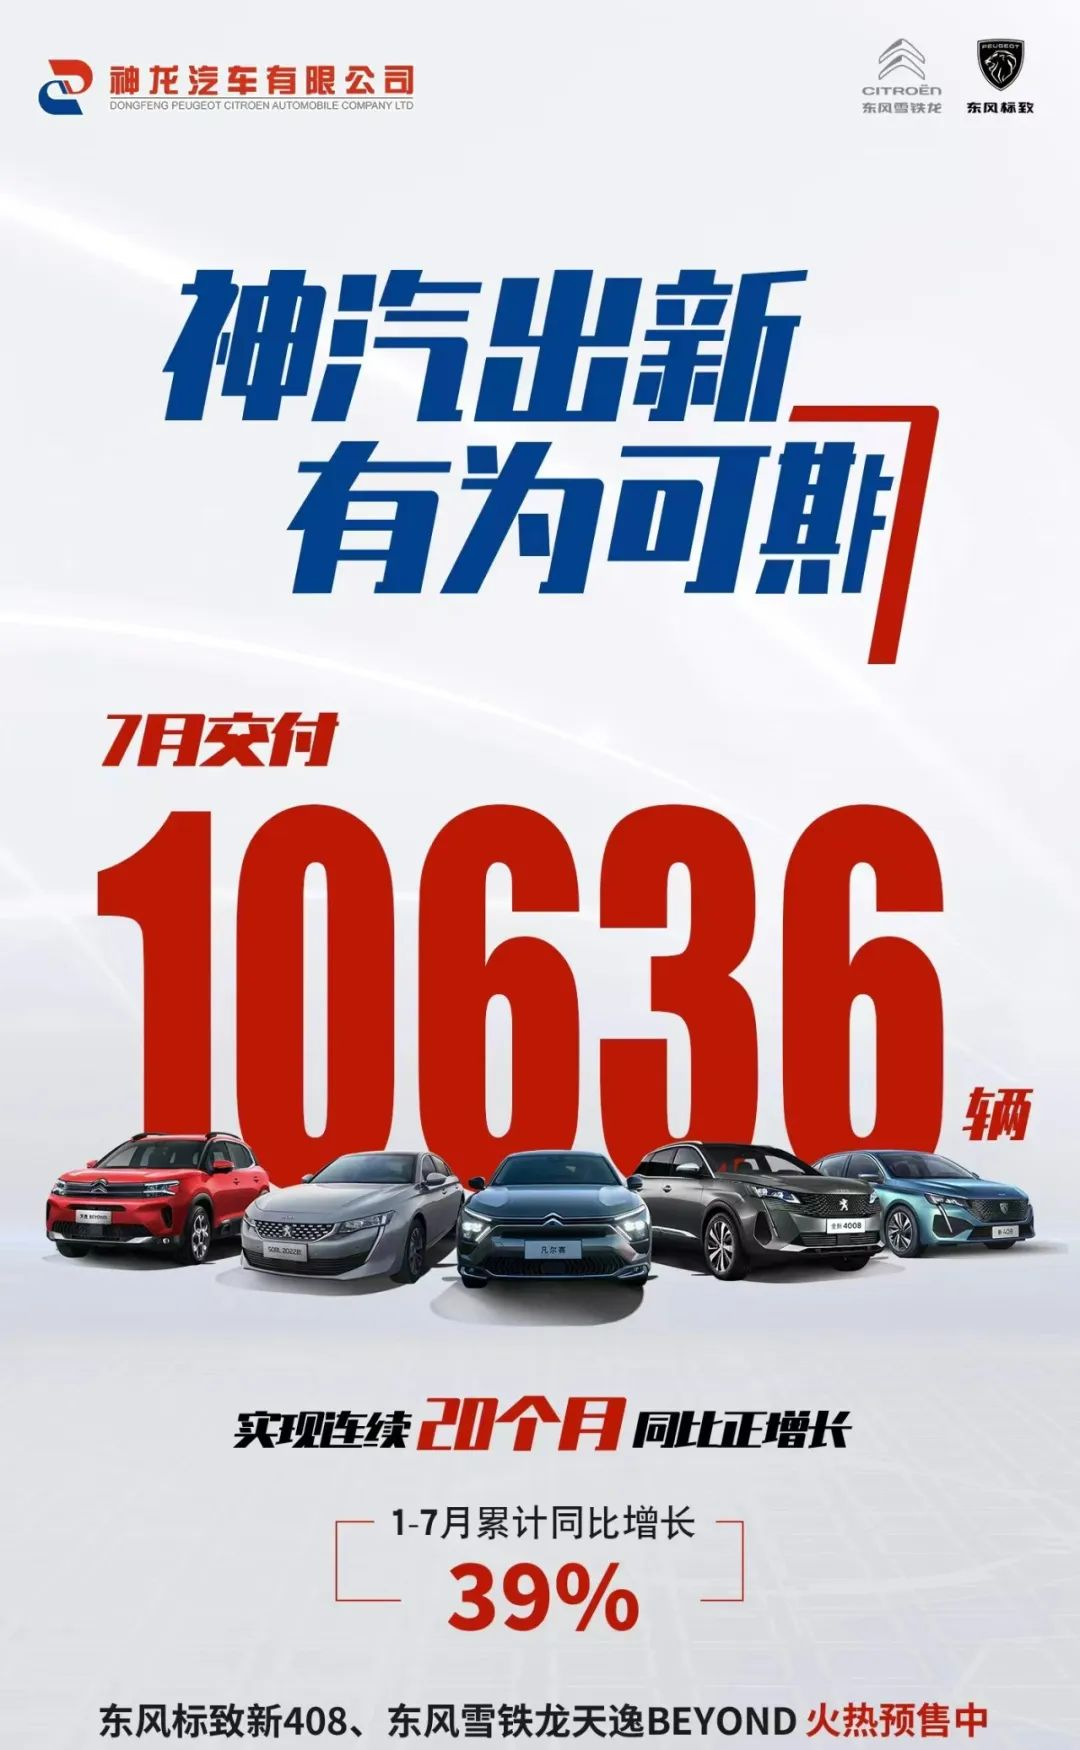 7月31日23:40，神龙汽车宣布7月交付10636辆；1-7月累计销量66395辆，累计同比增长39%。